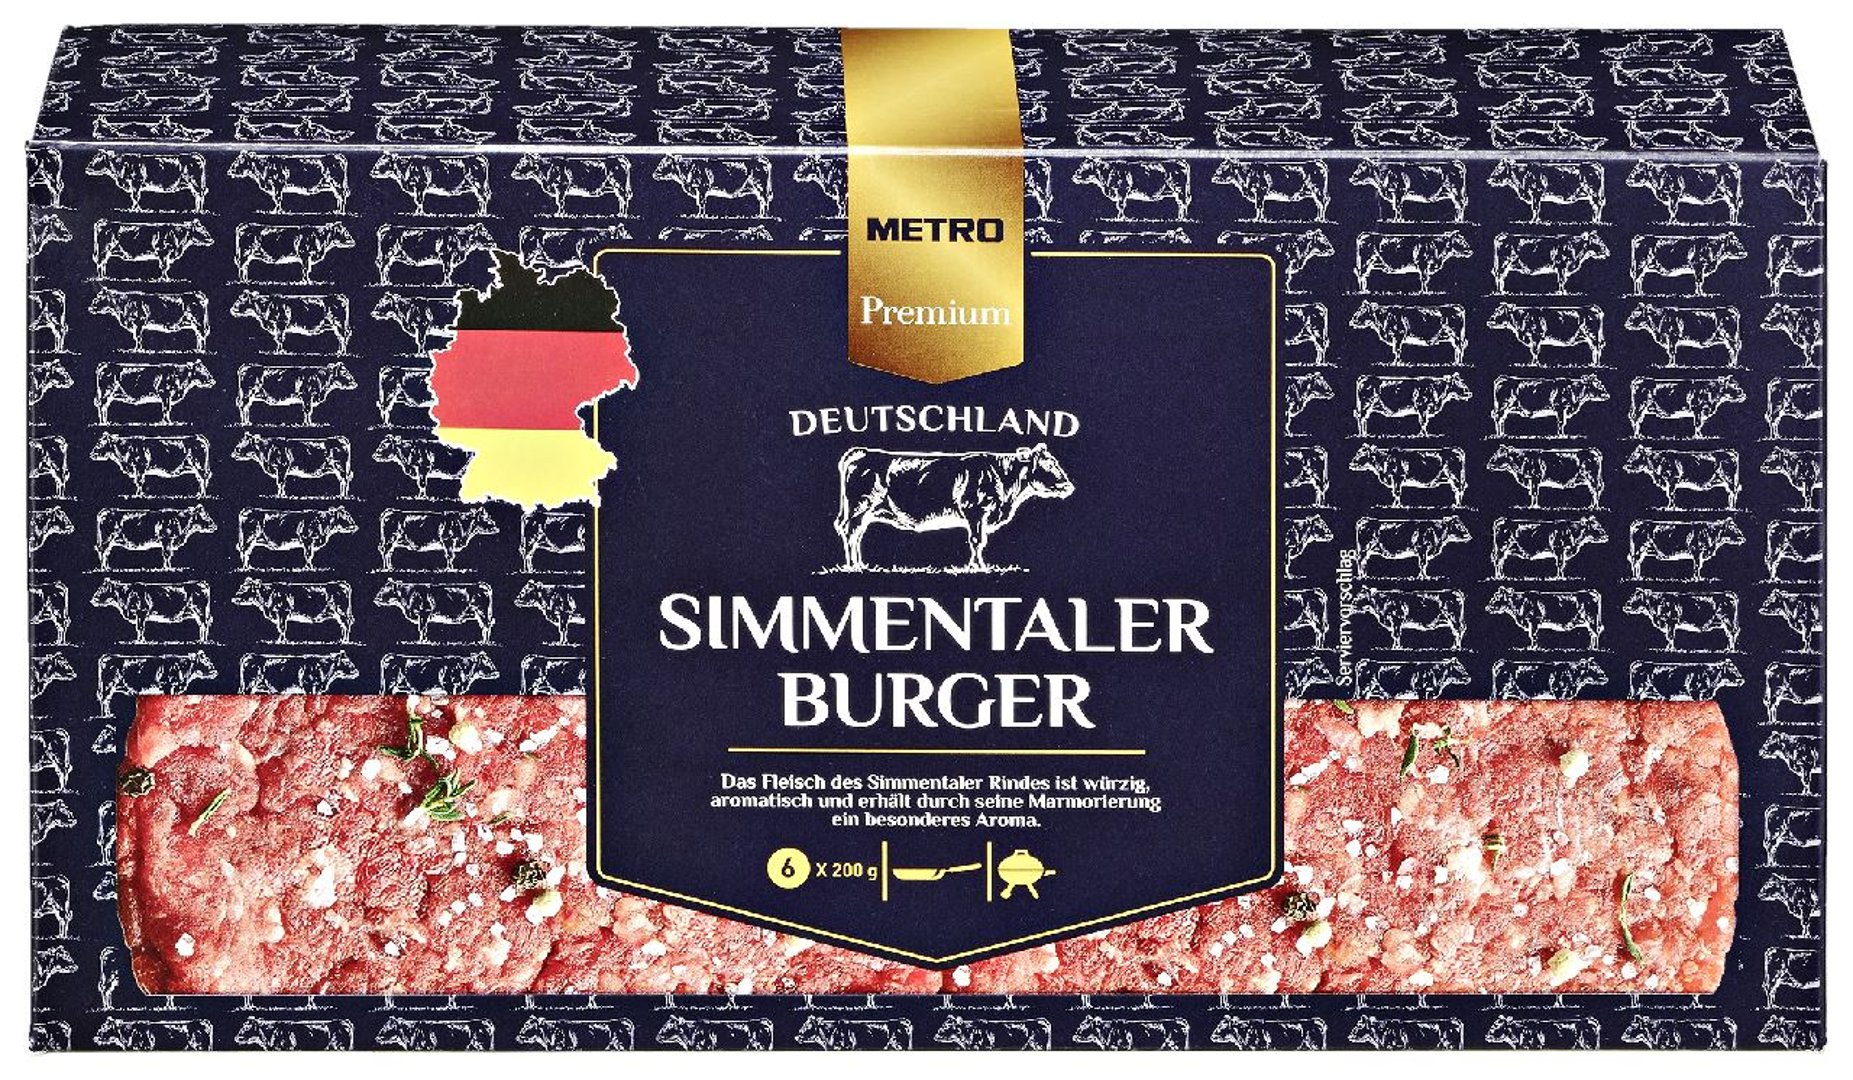 METRO Premium - Simmentaler Burger tiefgefroren, roh, 6 Stück à 200 g, vak.-verpackt 1,2 kg Packung